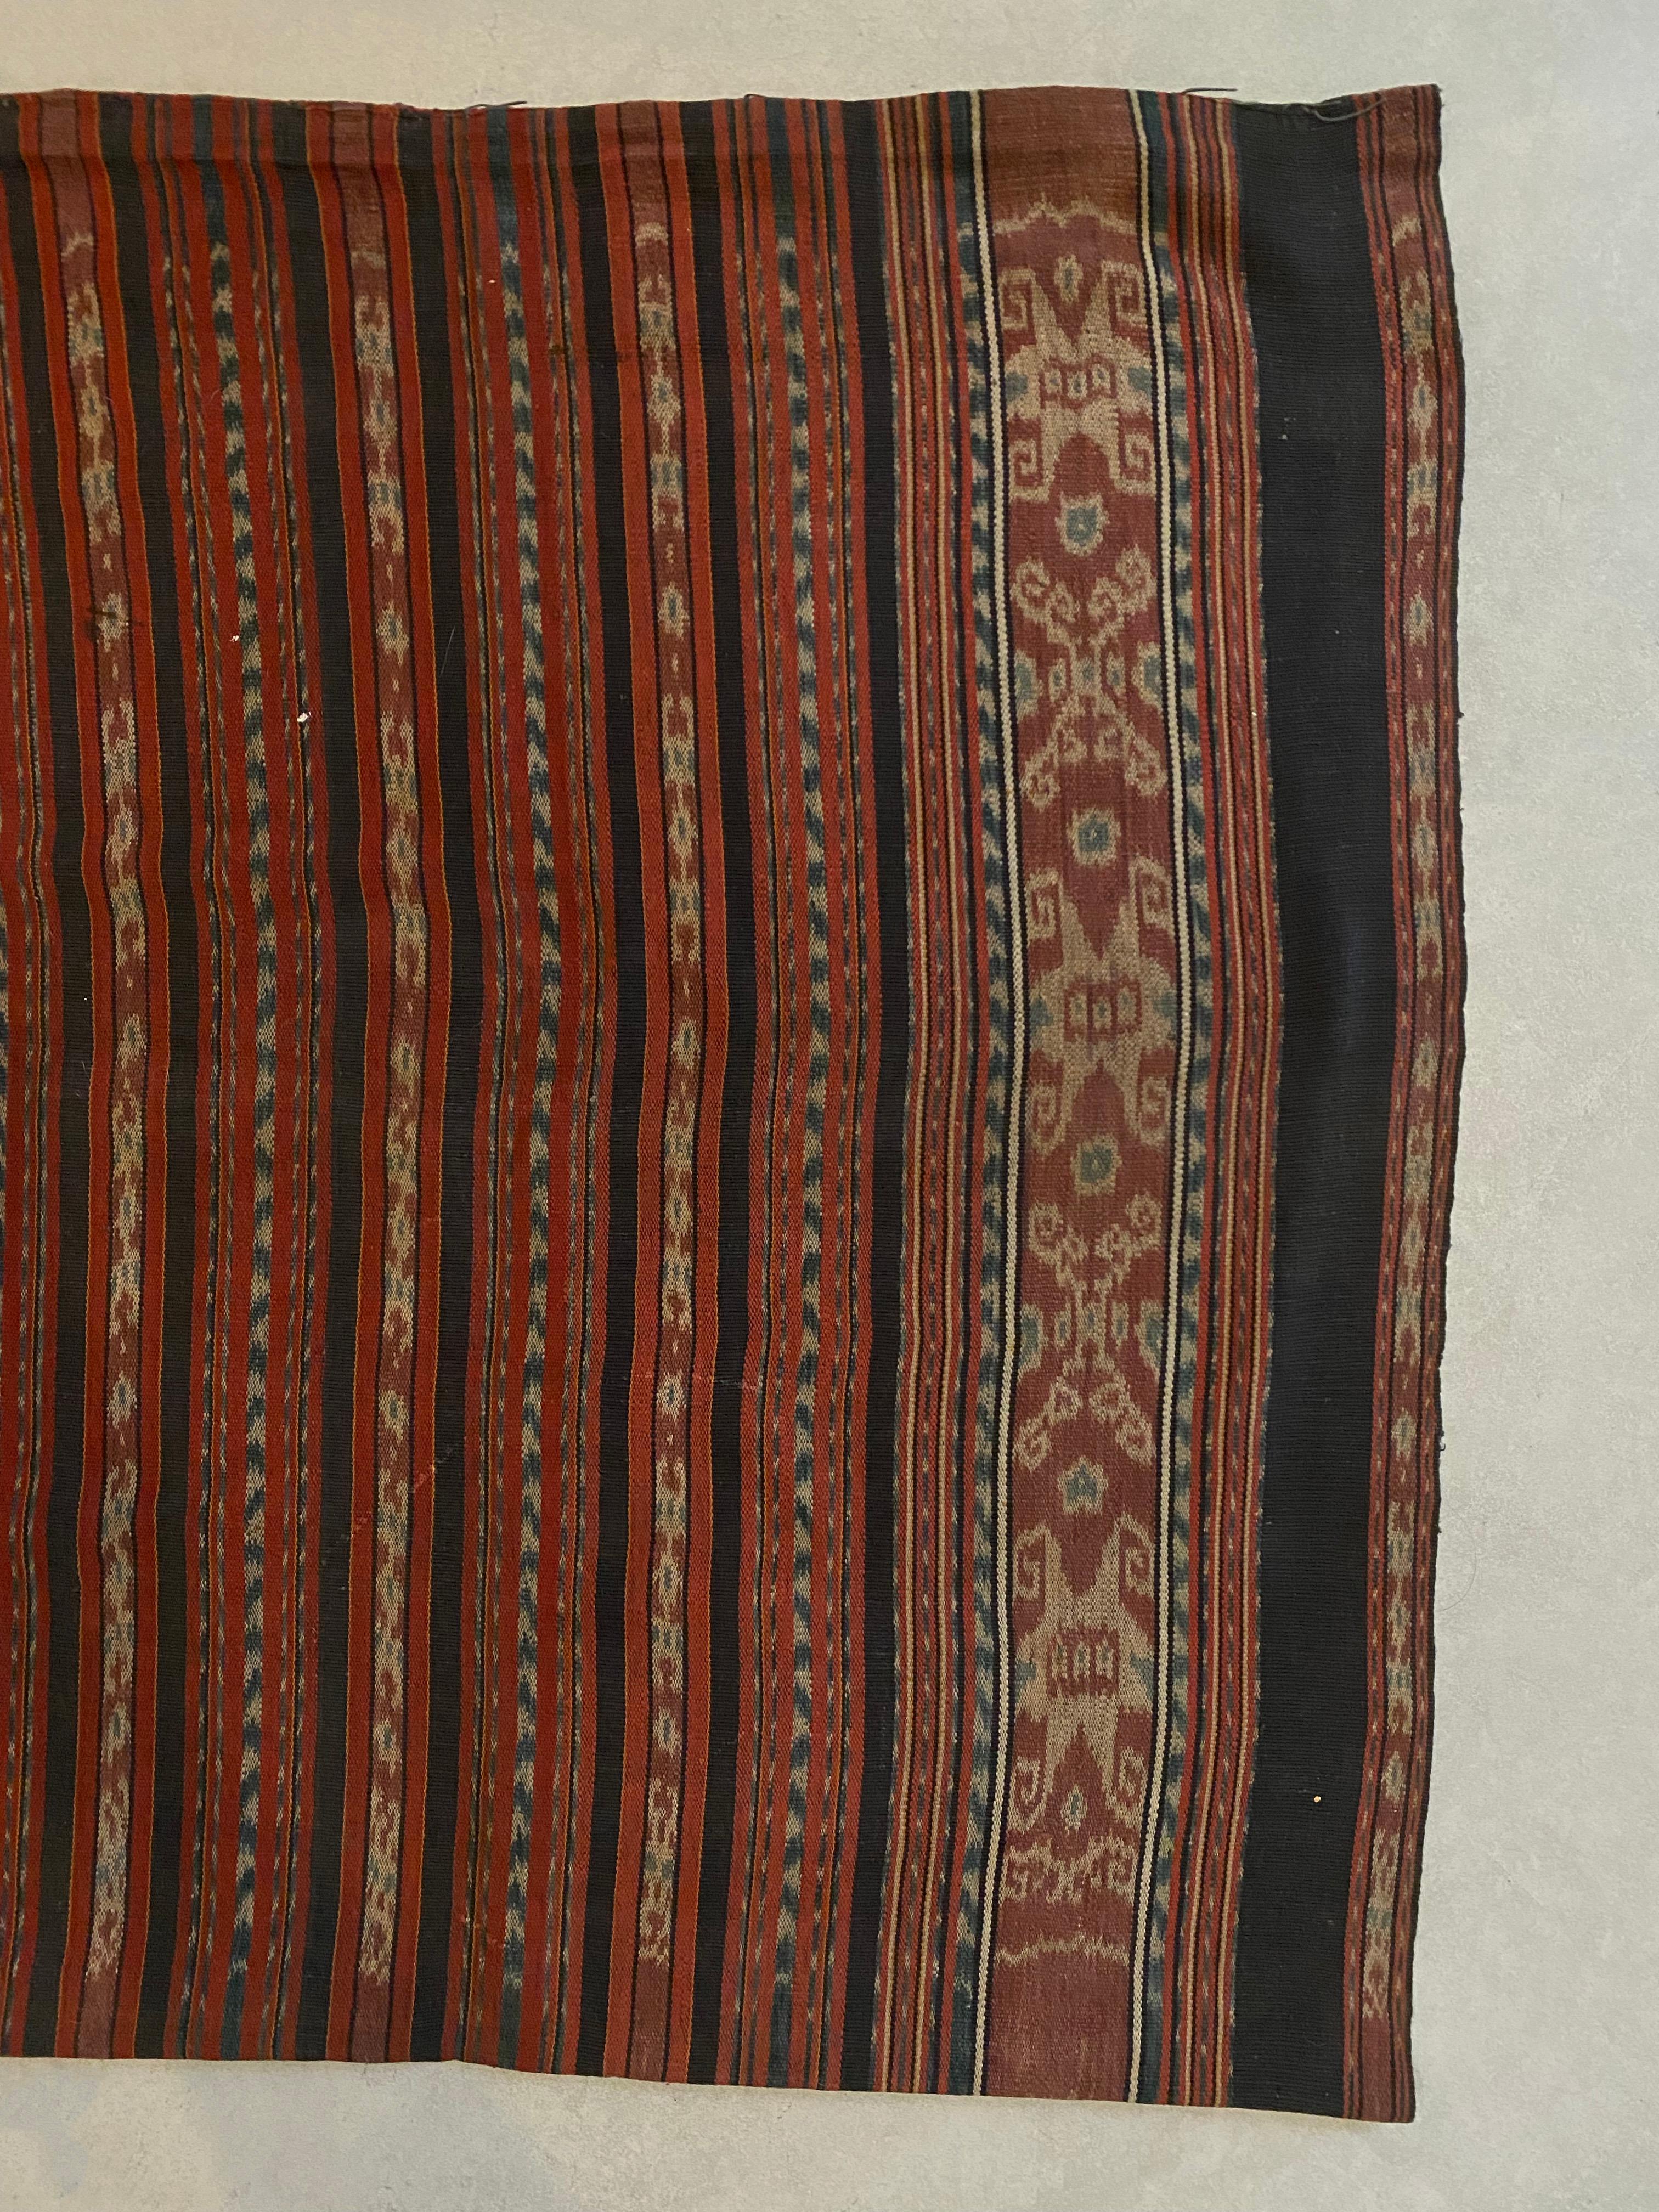 Dieses Ikat-Textil stammt von der Insel Flores in Indonesien. Es wird mit natürlich gefärbten Garnen nach einer seit Generationen überlieferten Methode handgewebt. Dieser Stoff ist schlauchförmig, damit er von den Einheimischen der Insel als